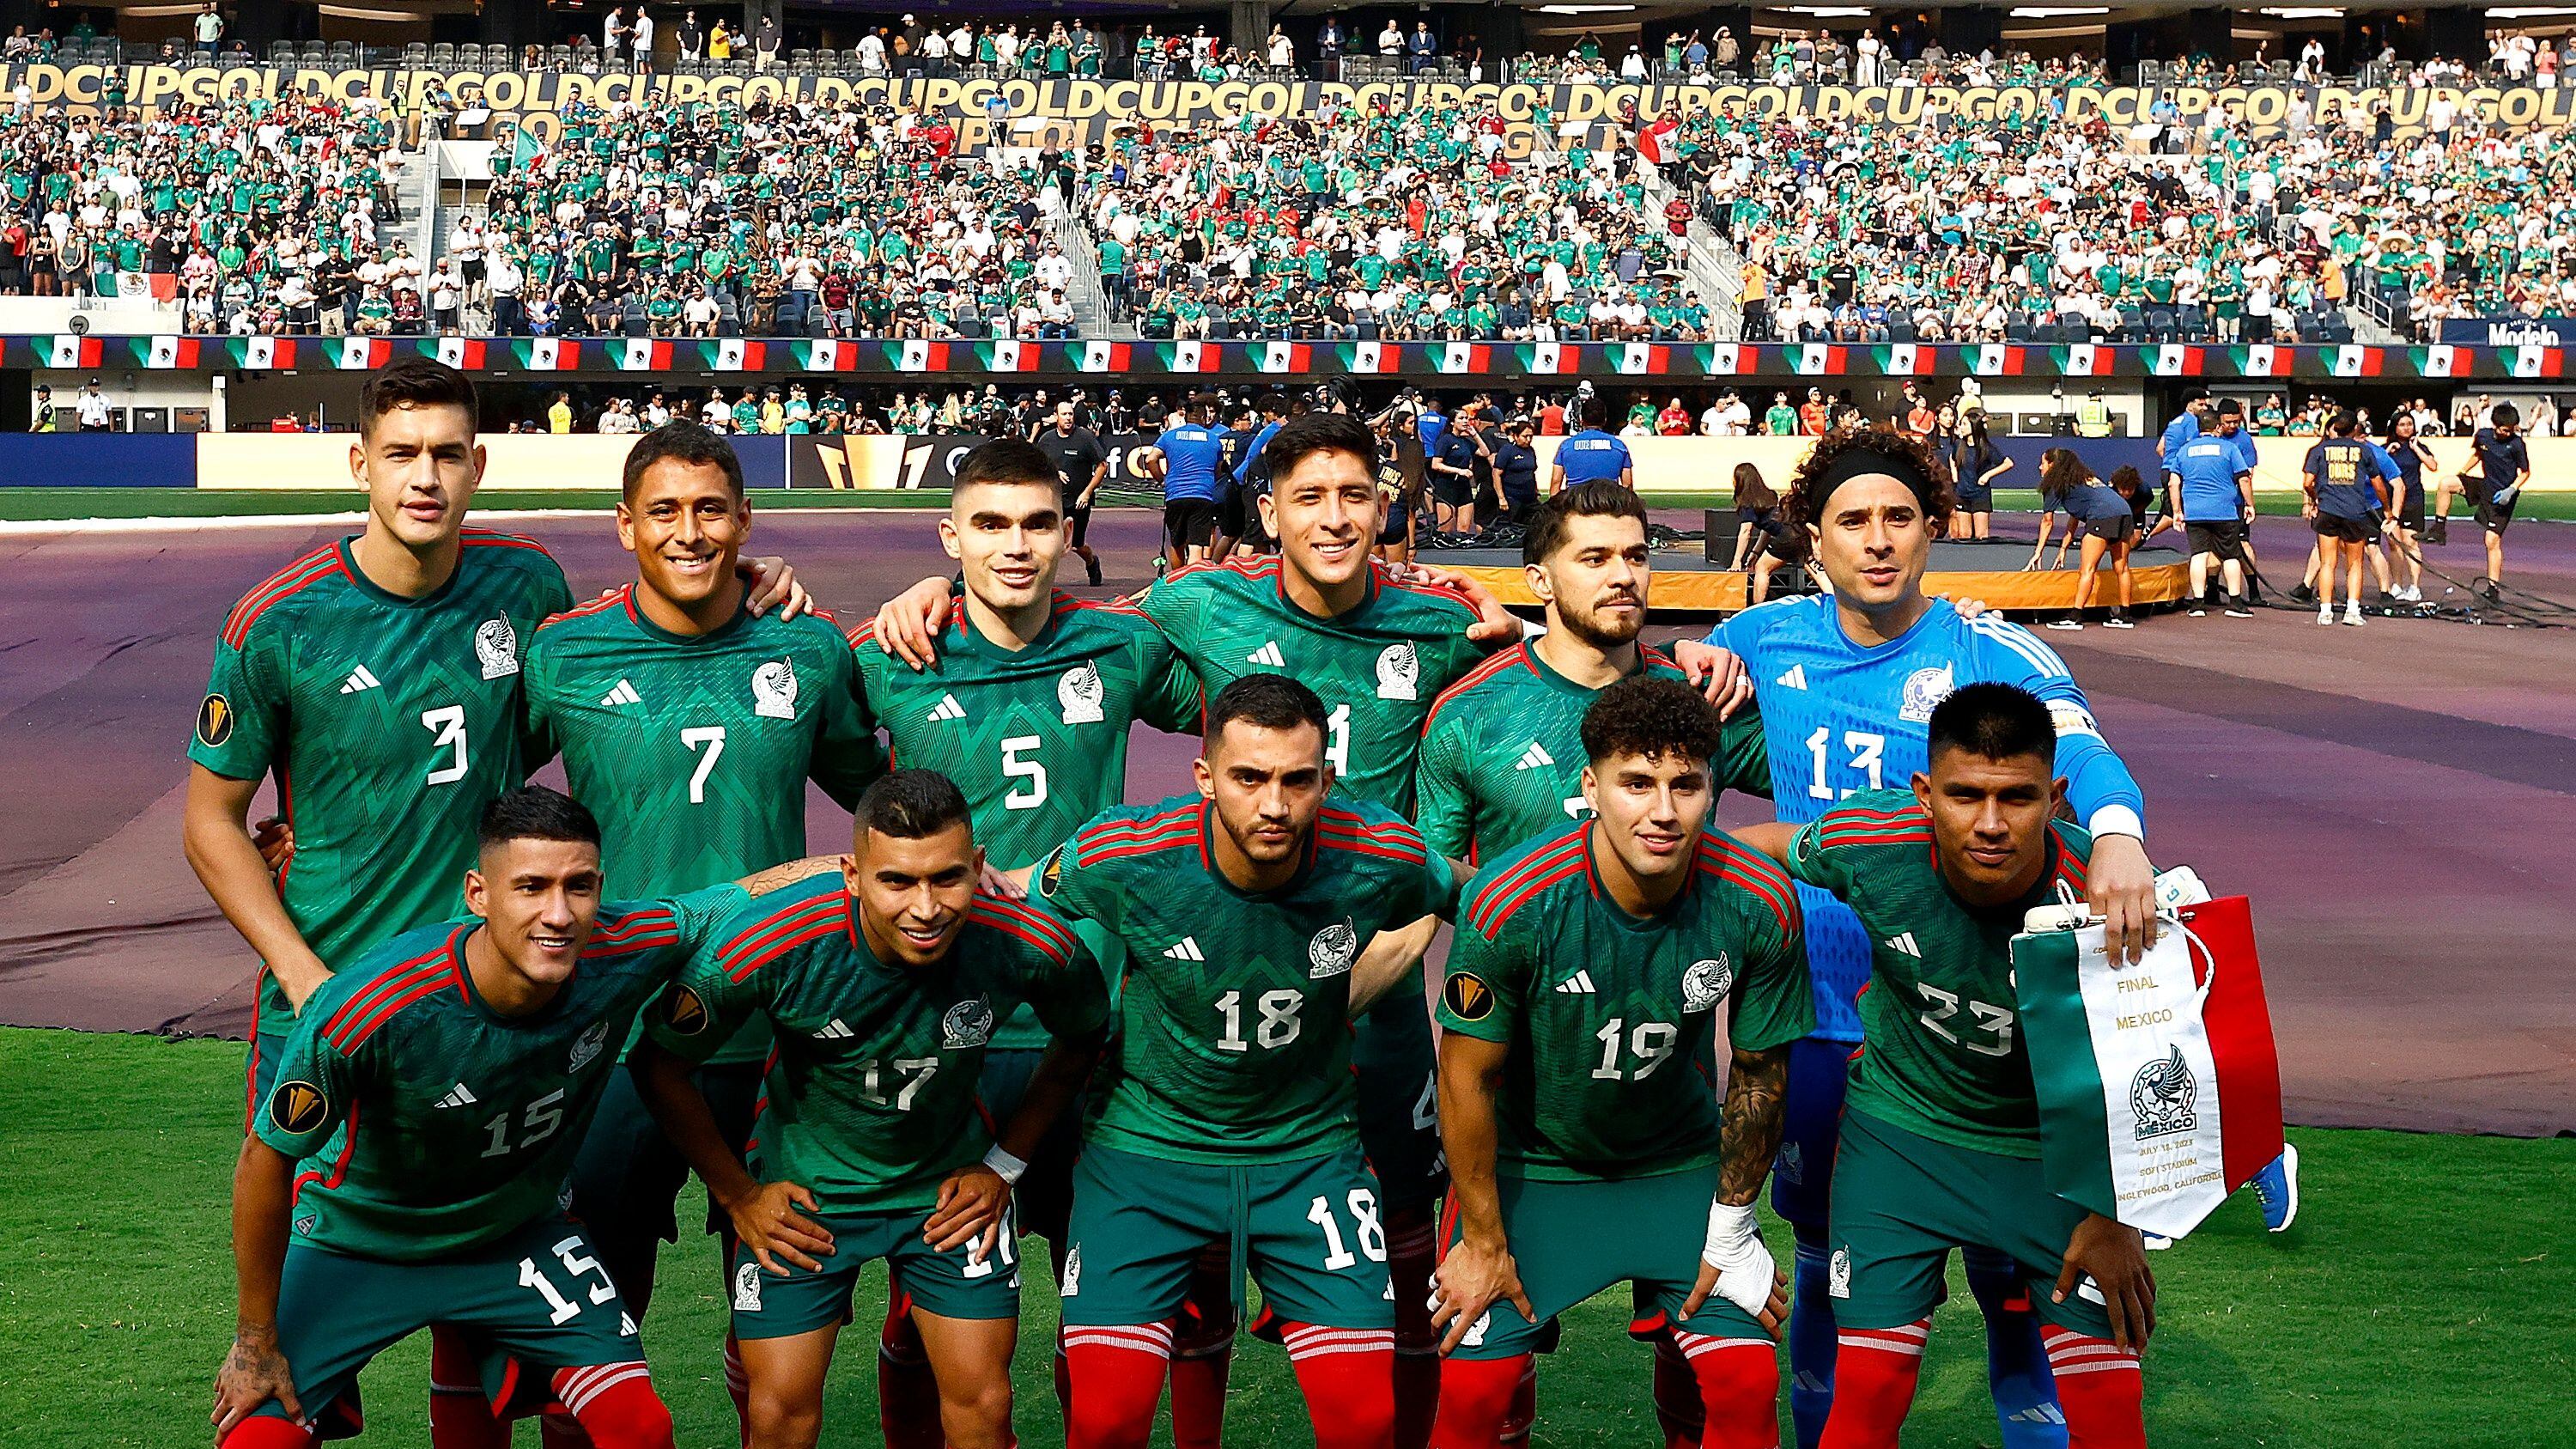 Jugador importante de la Selección Mexicana cae lesionado y abandona concentración